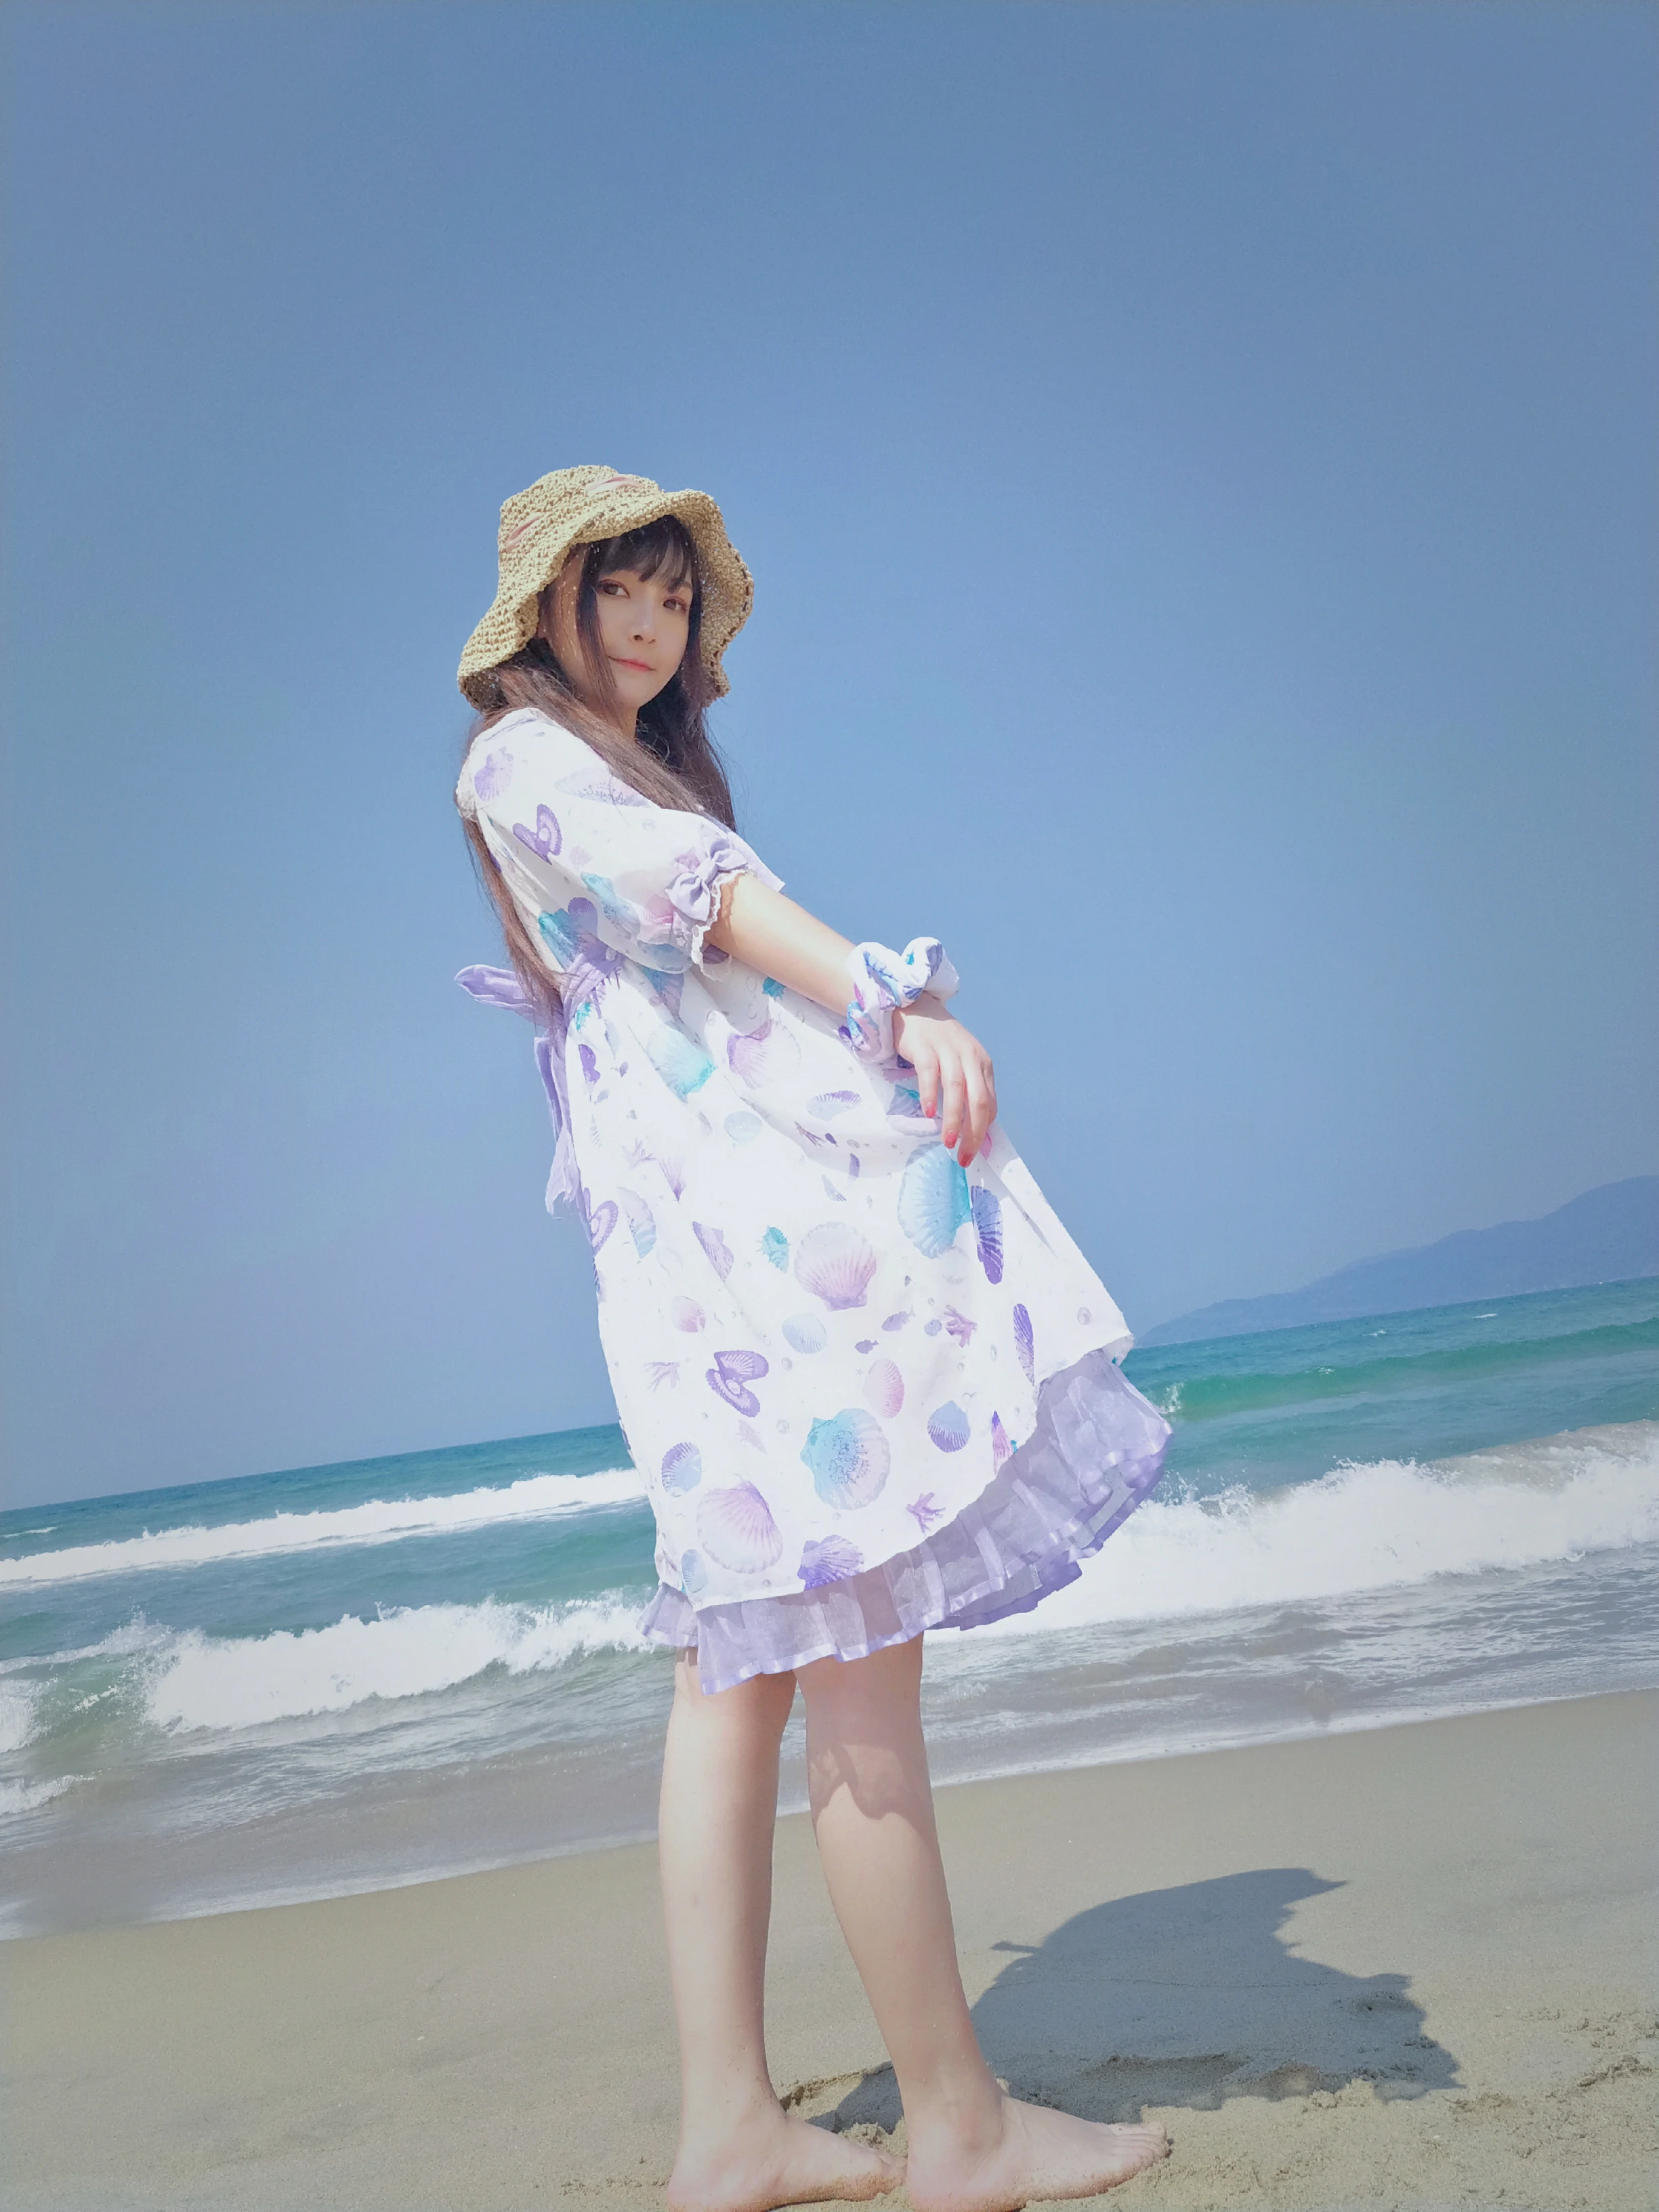 清纯少女 古川kagura 蓝色连身裙之沙滩写真,_20190207_180257